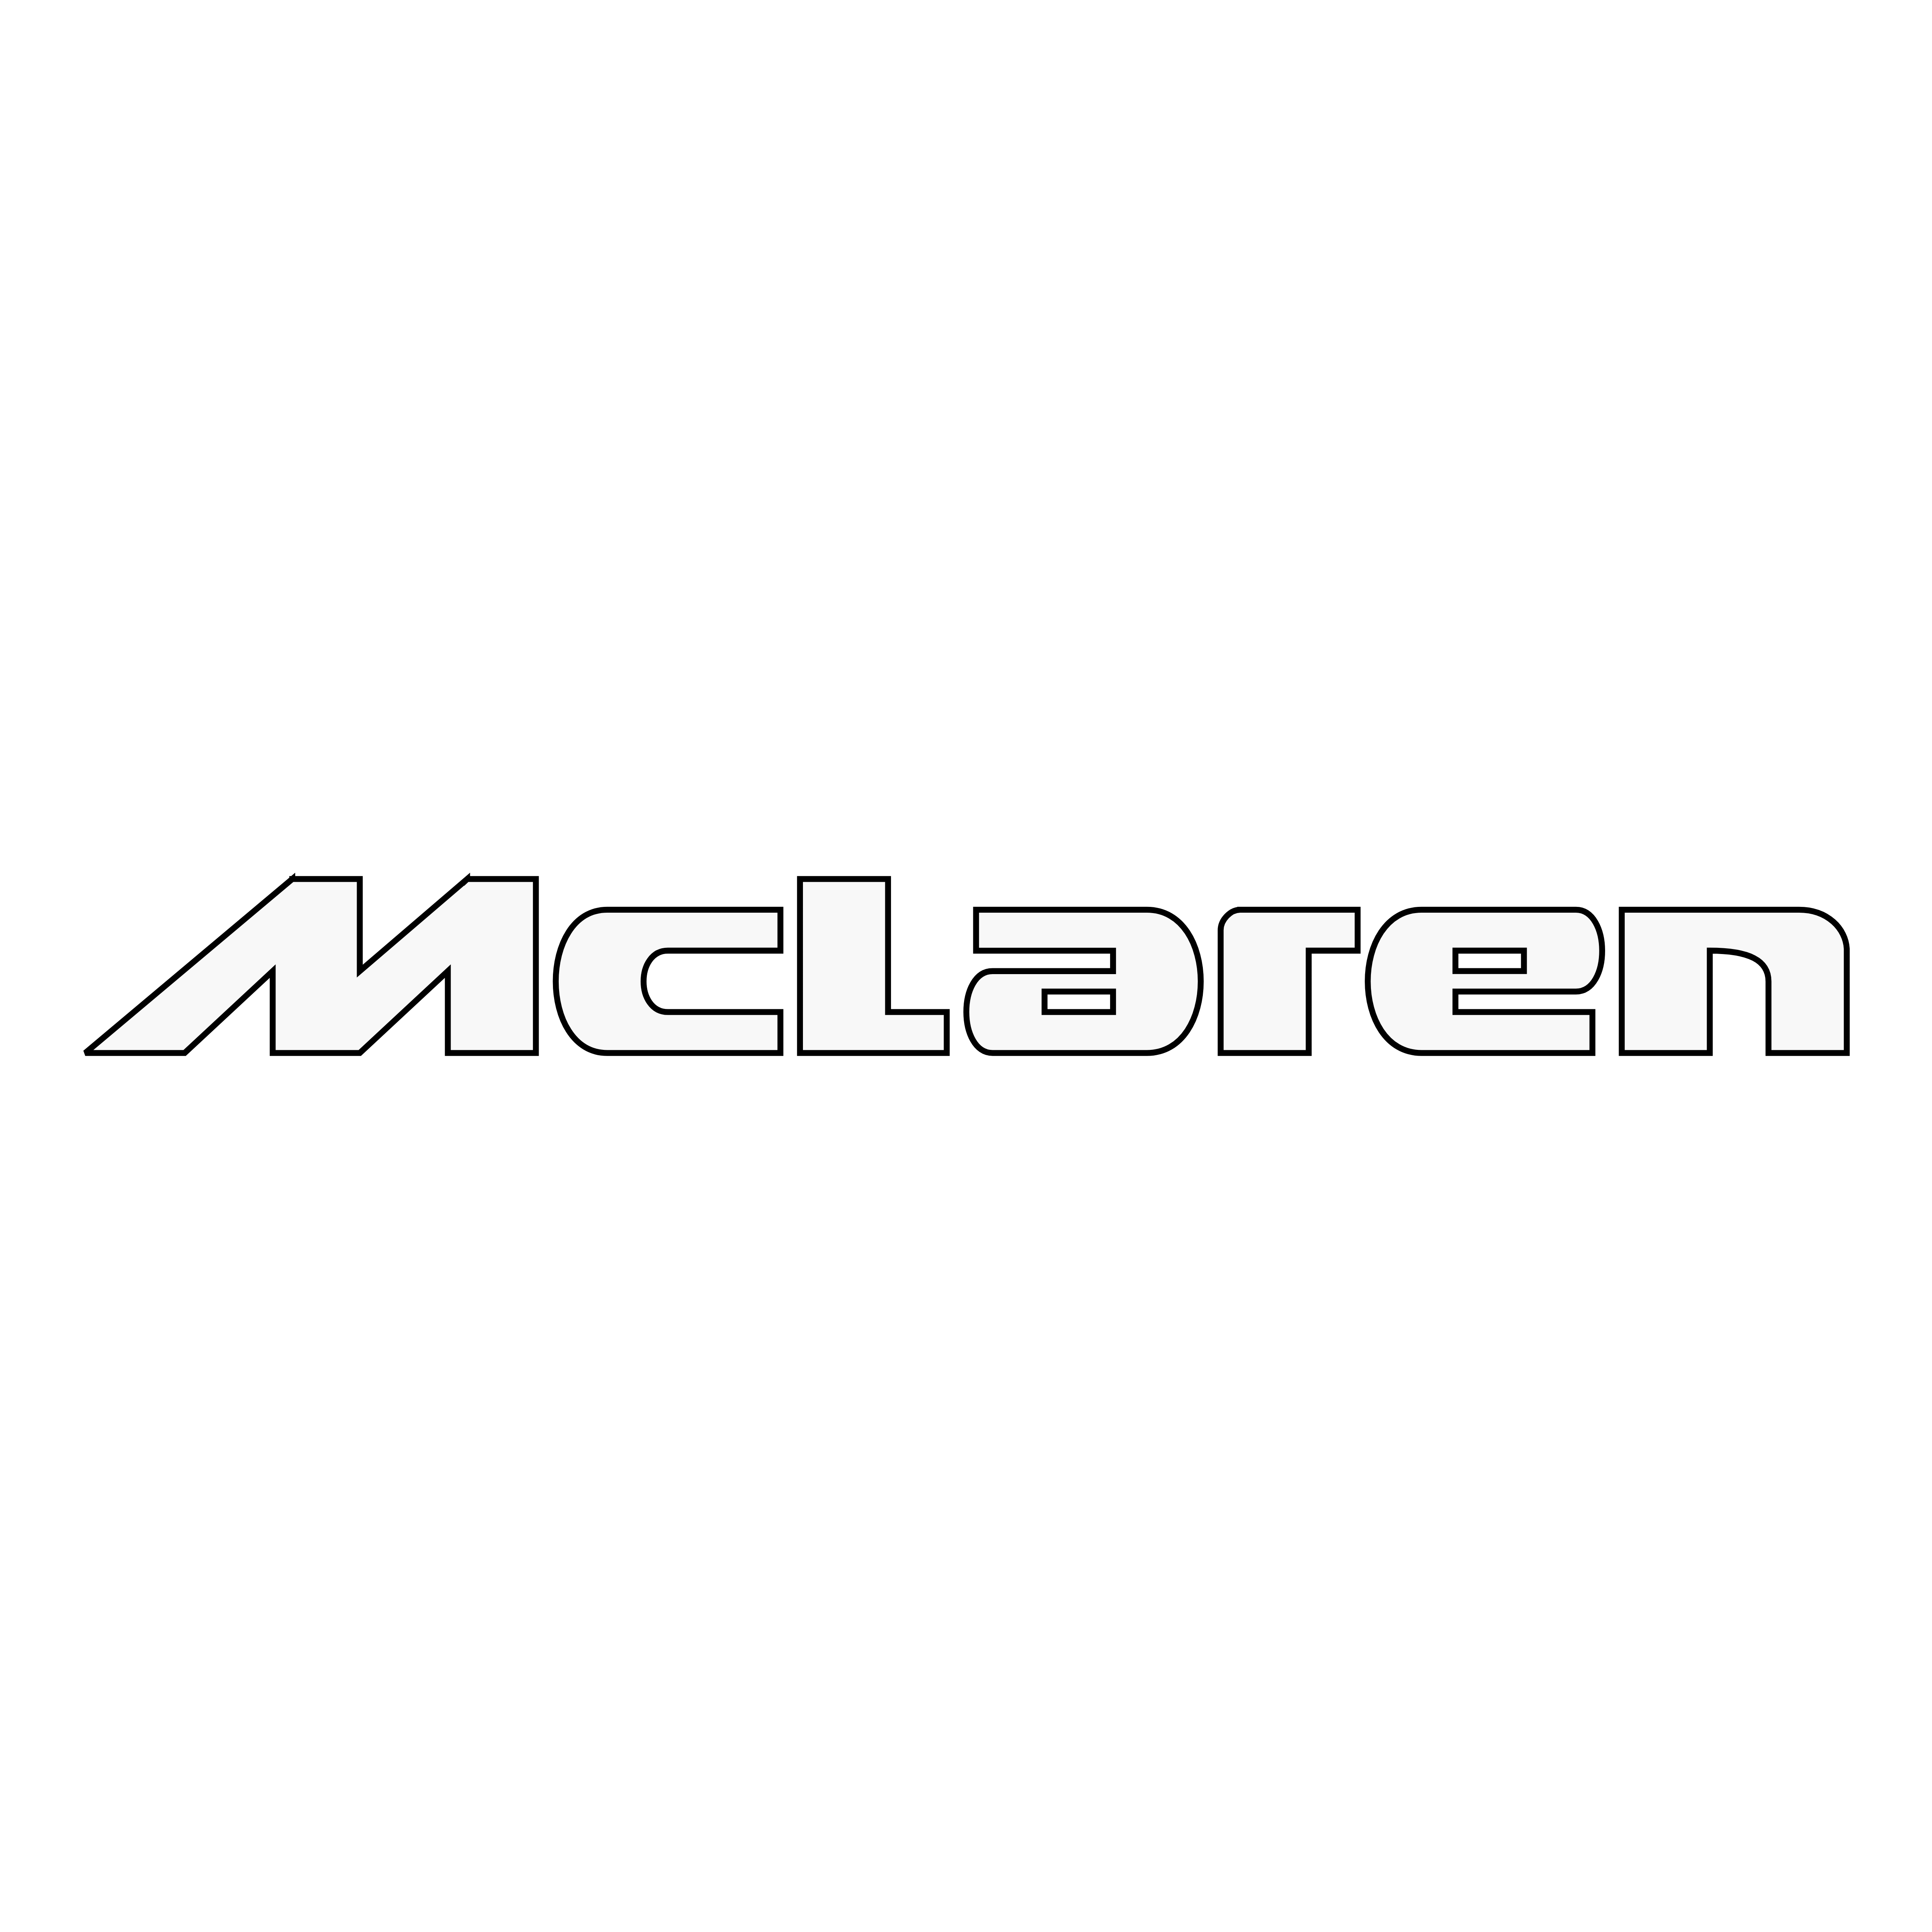 Download Mclaren Logo Free Pn